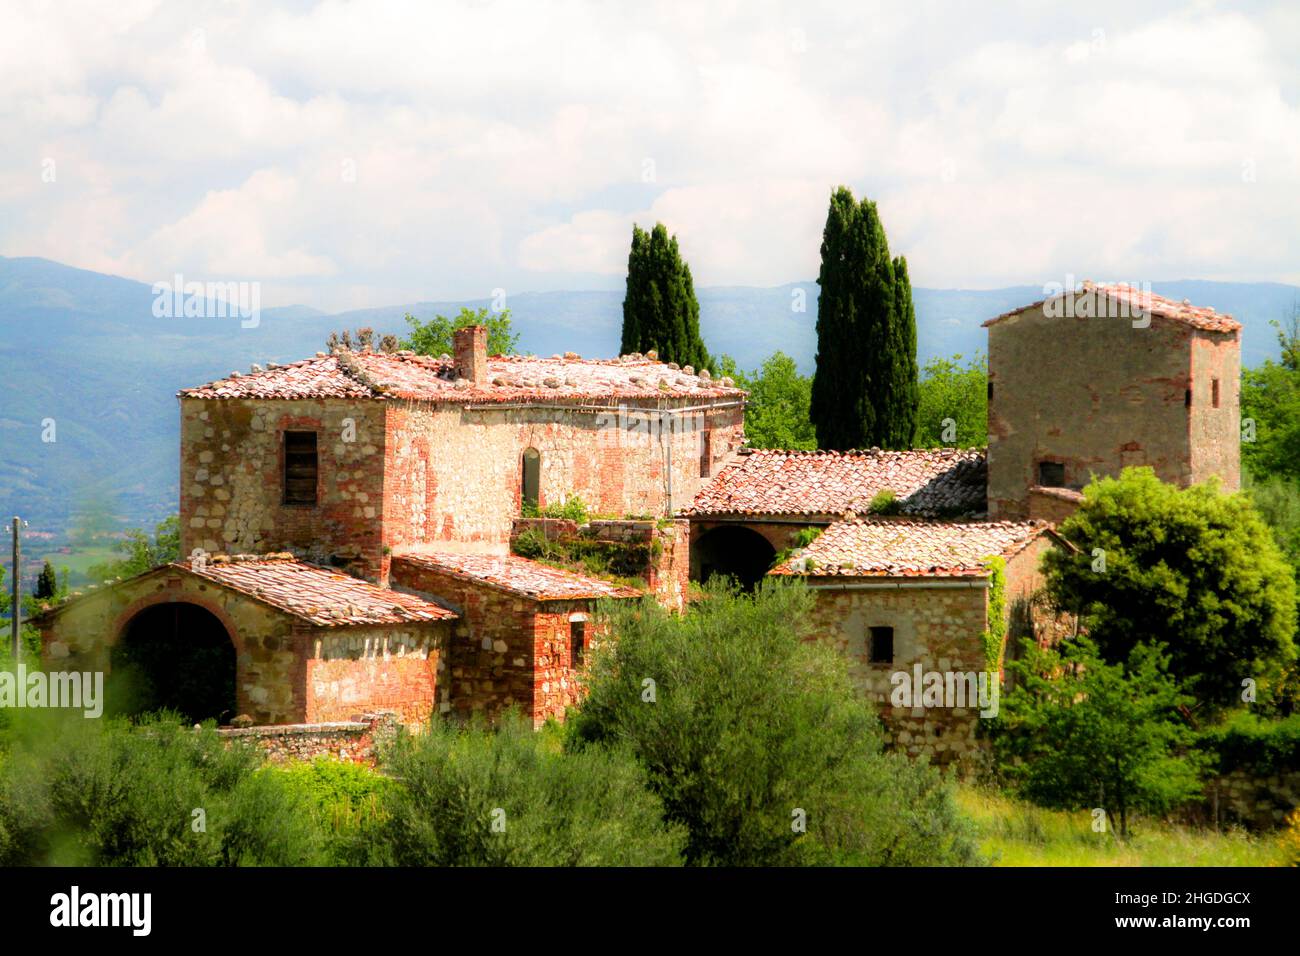 farmhouse in Tuscany, Italy Stock Photo